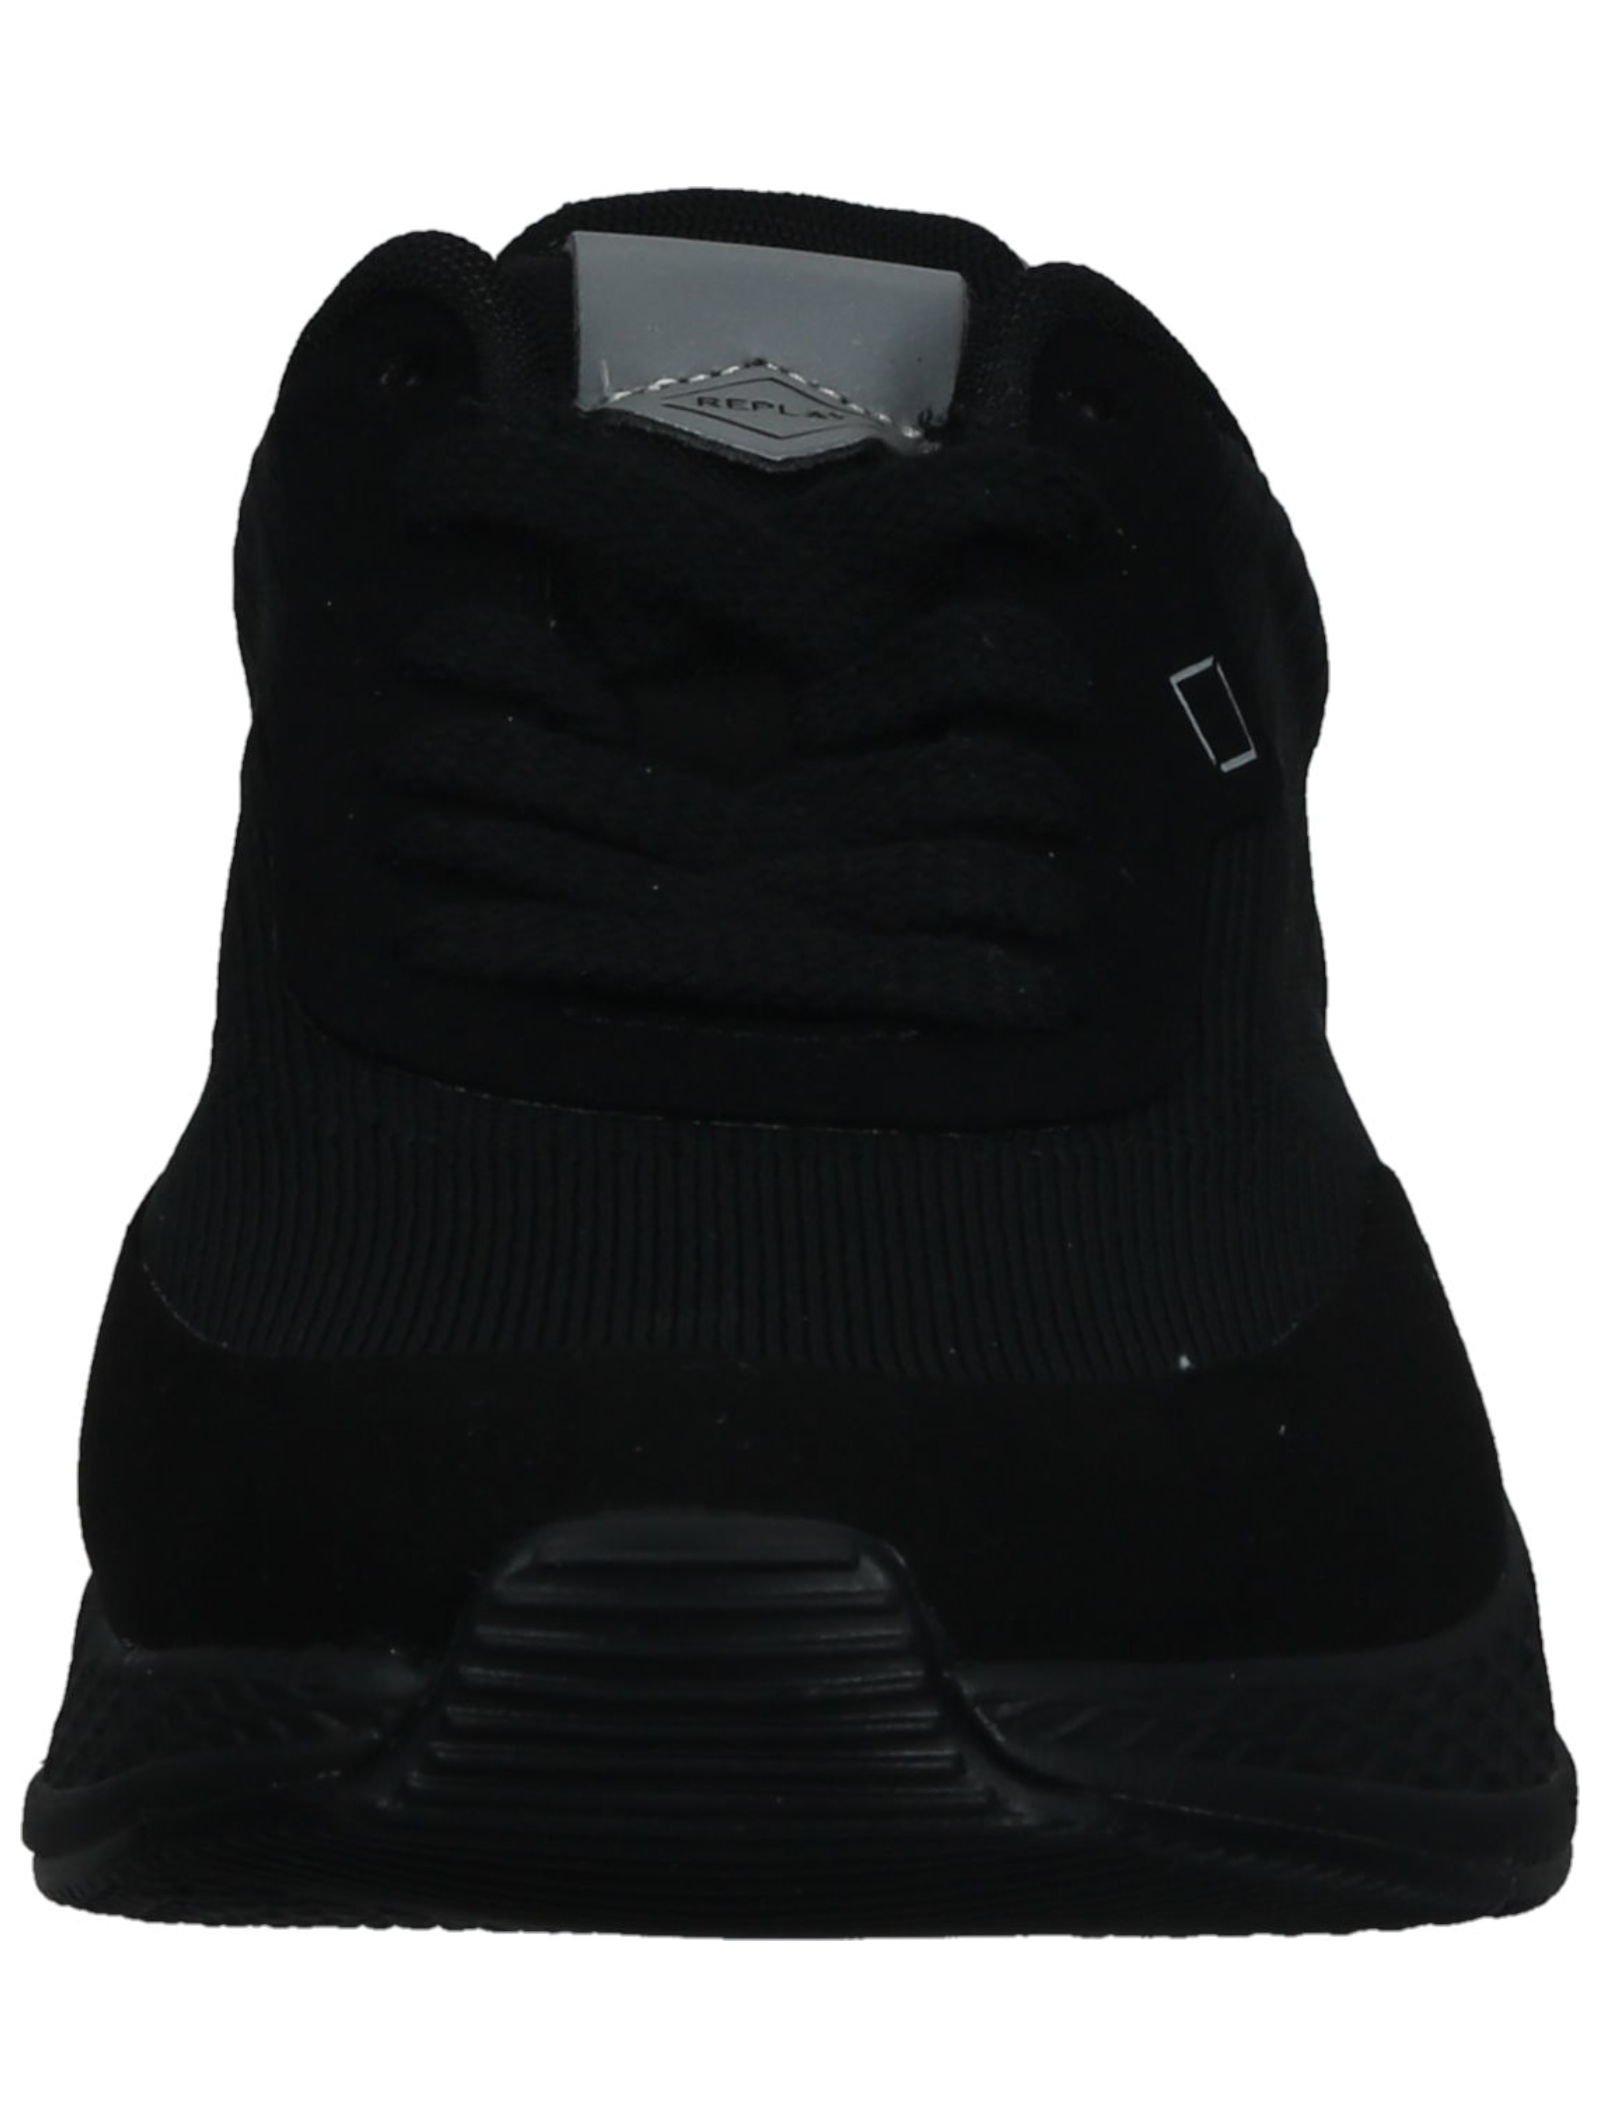 REPLAY  Sneaker GMS2B .000.C0032T 